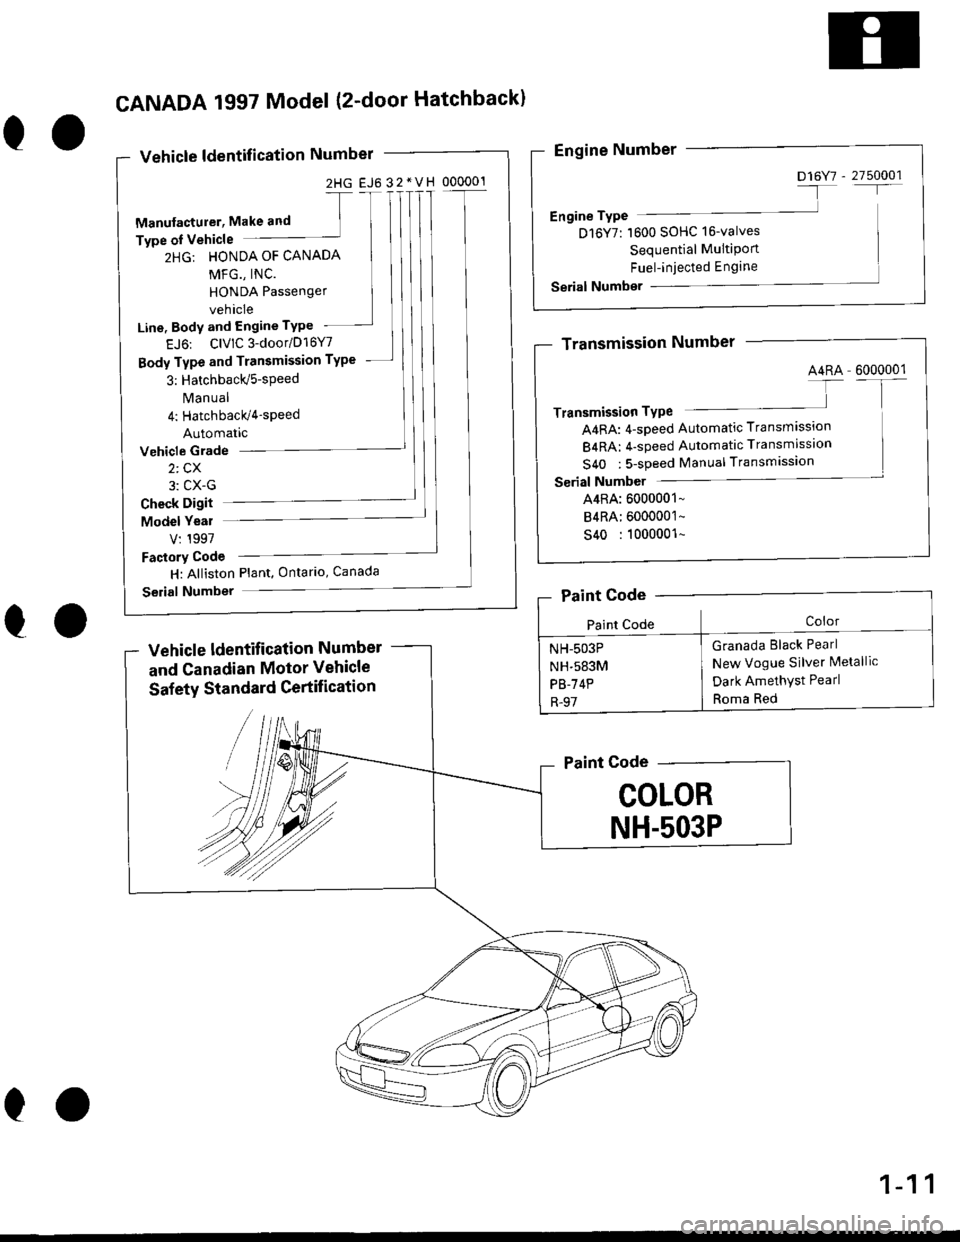 HONDA CIVIC 2000 6.G Workshop Manual 2HG EJ6 32*VH 000001
eo
CANADA 1997 Model (2-door Hatchbackl
Vehicle ldentification Number
-[
Manufacturer, Make and ]Type oI Vehicle
2HG: HONDA OF CANADA
MFG., INC.
HONDA Passenger
vehicle
Line, Body